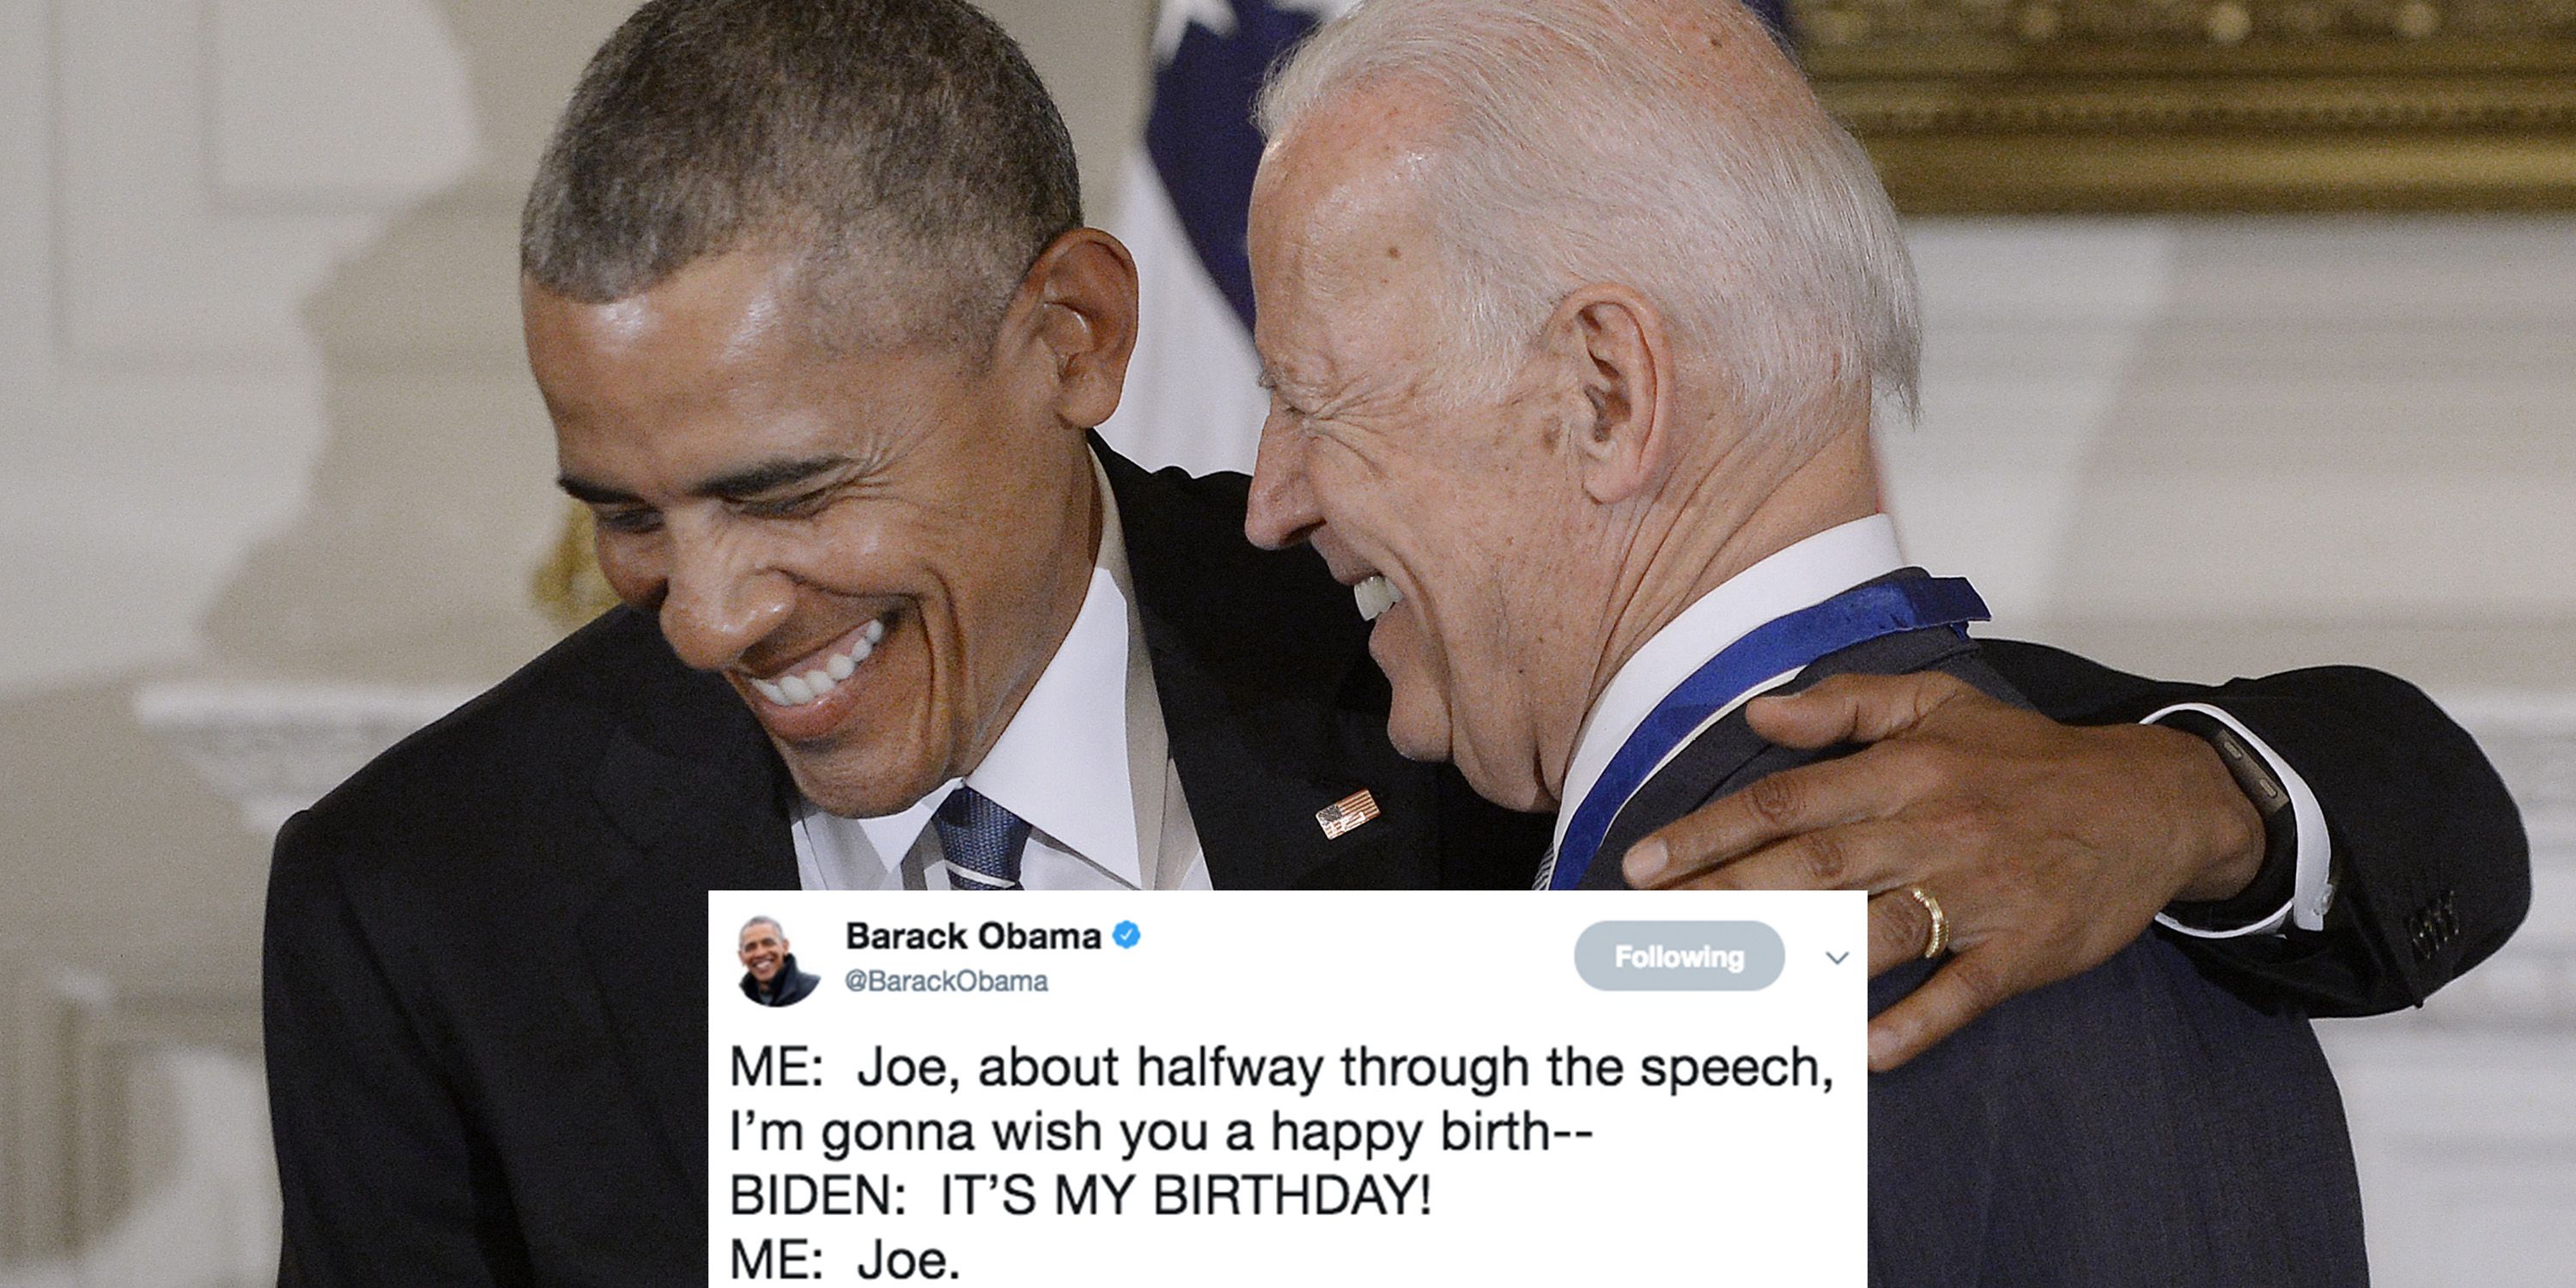 happy birthday meme obama